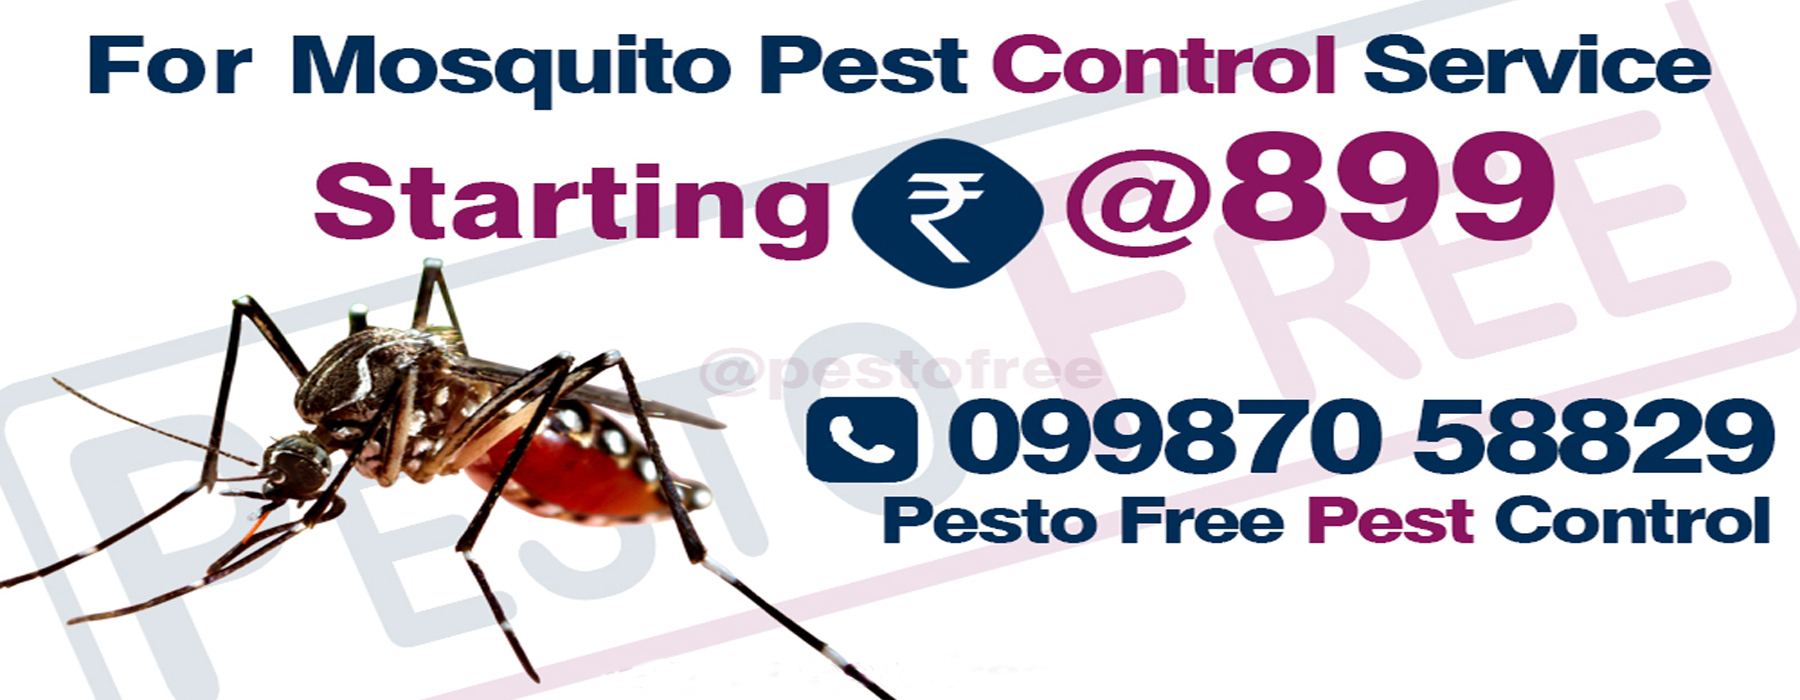 Mosquito Pest Control in Mumbai